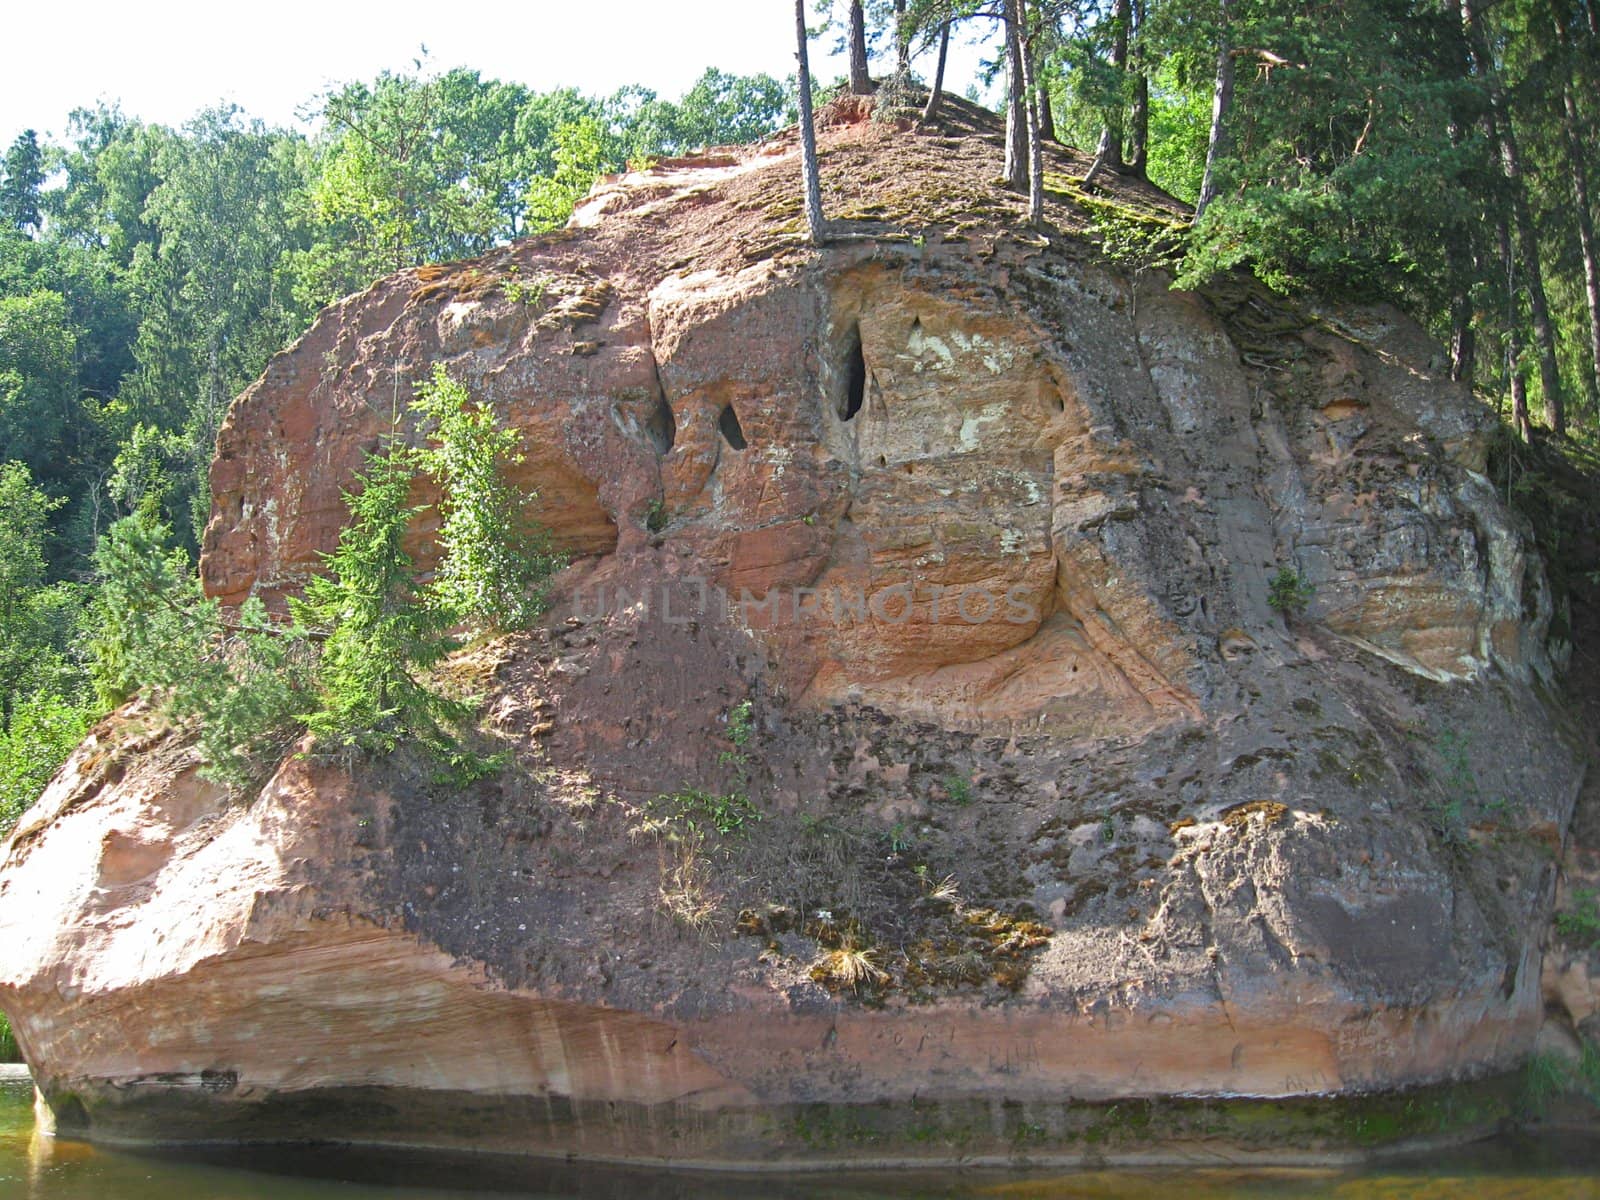 Zvārta rock near Amata river in Latvia by MarkoStrada